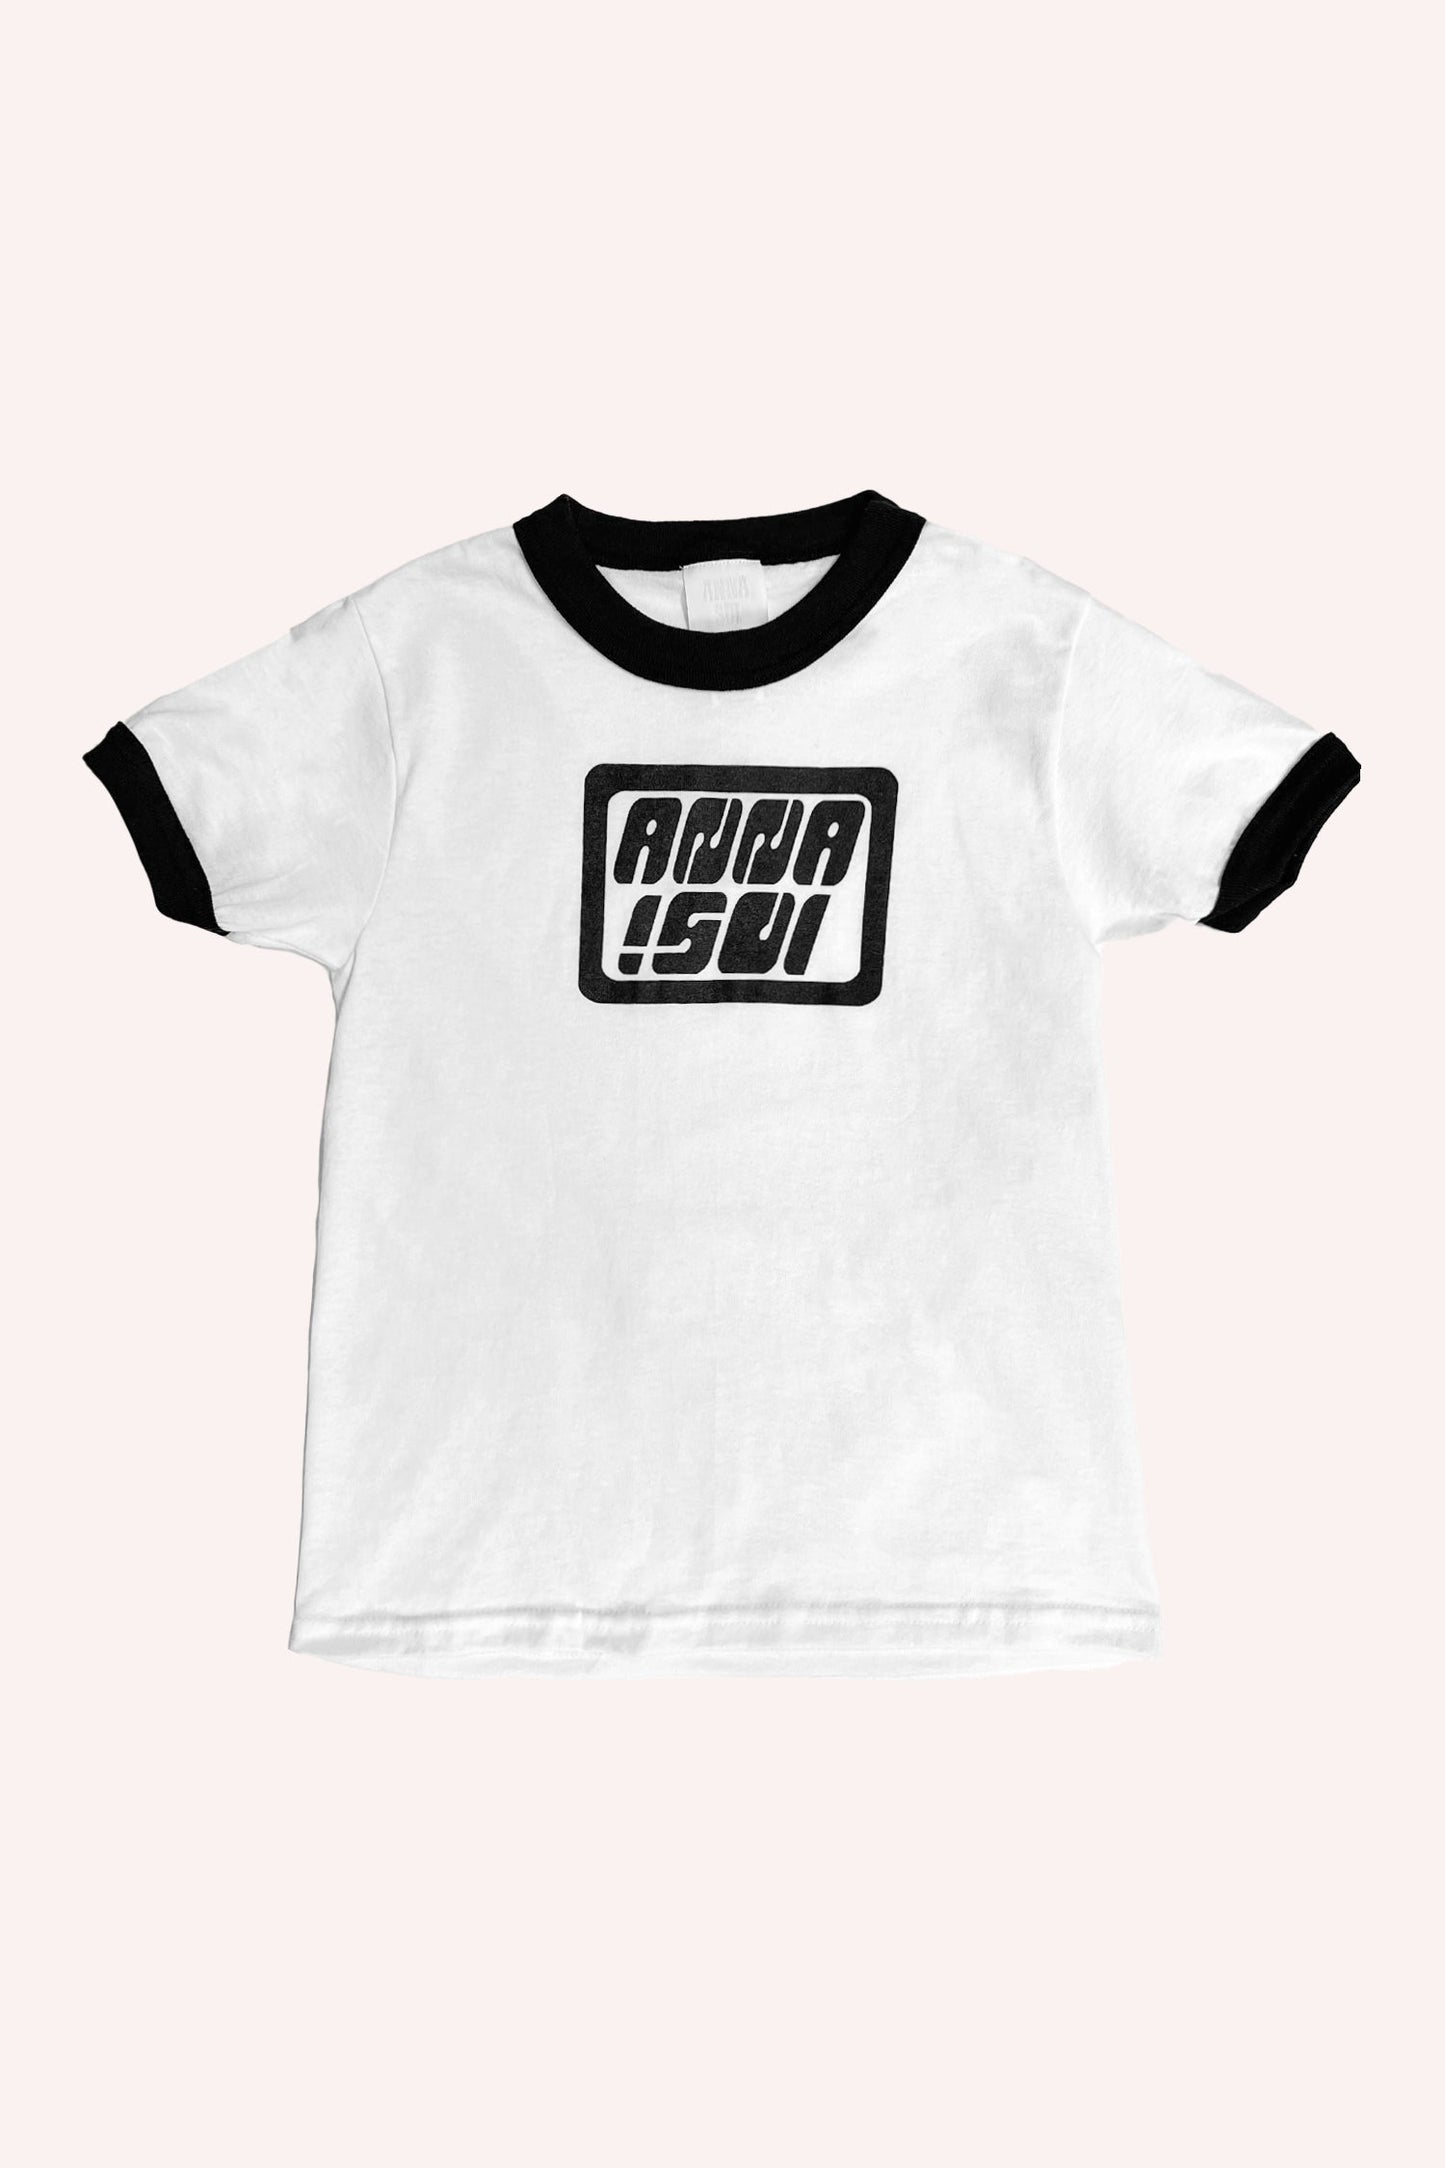 Anna Sui Ringer Tee noir, tee-shirt blanc avec bords noirs au col et aux bras, logo Anna Sui sur le devant